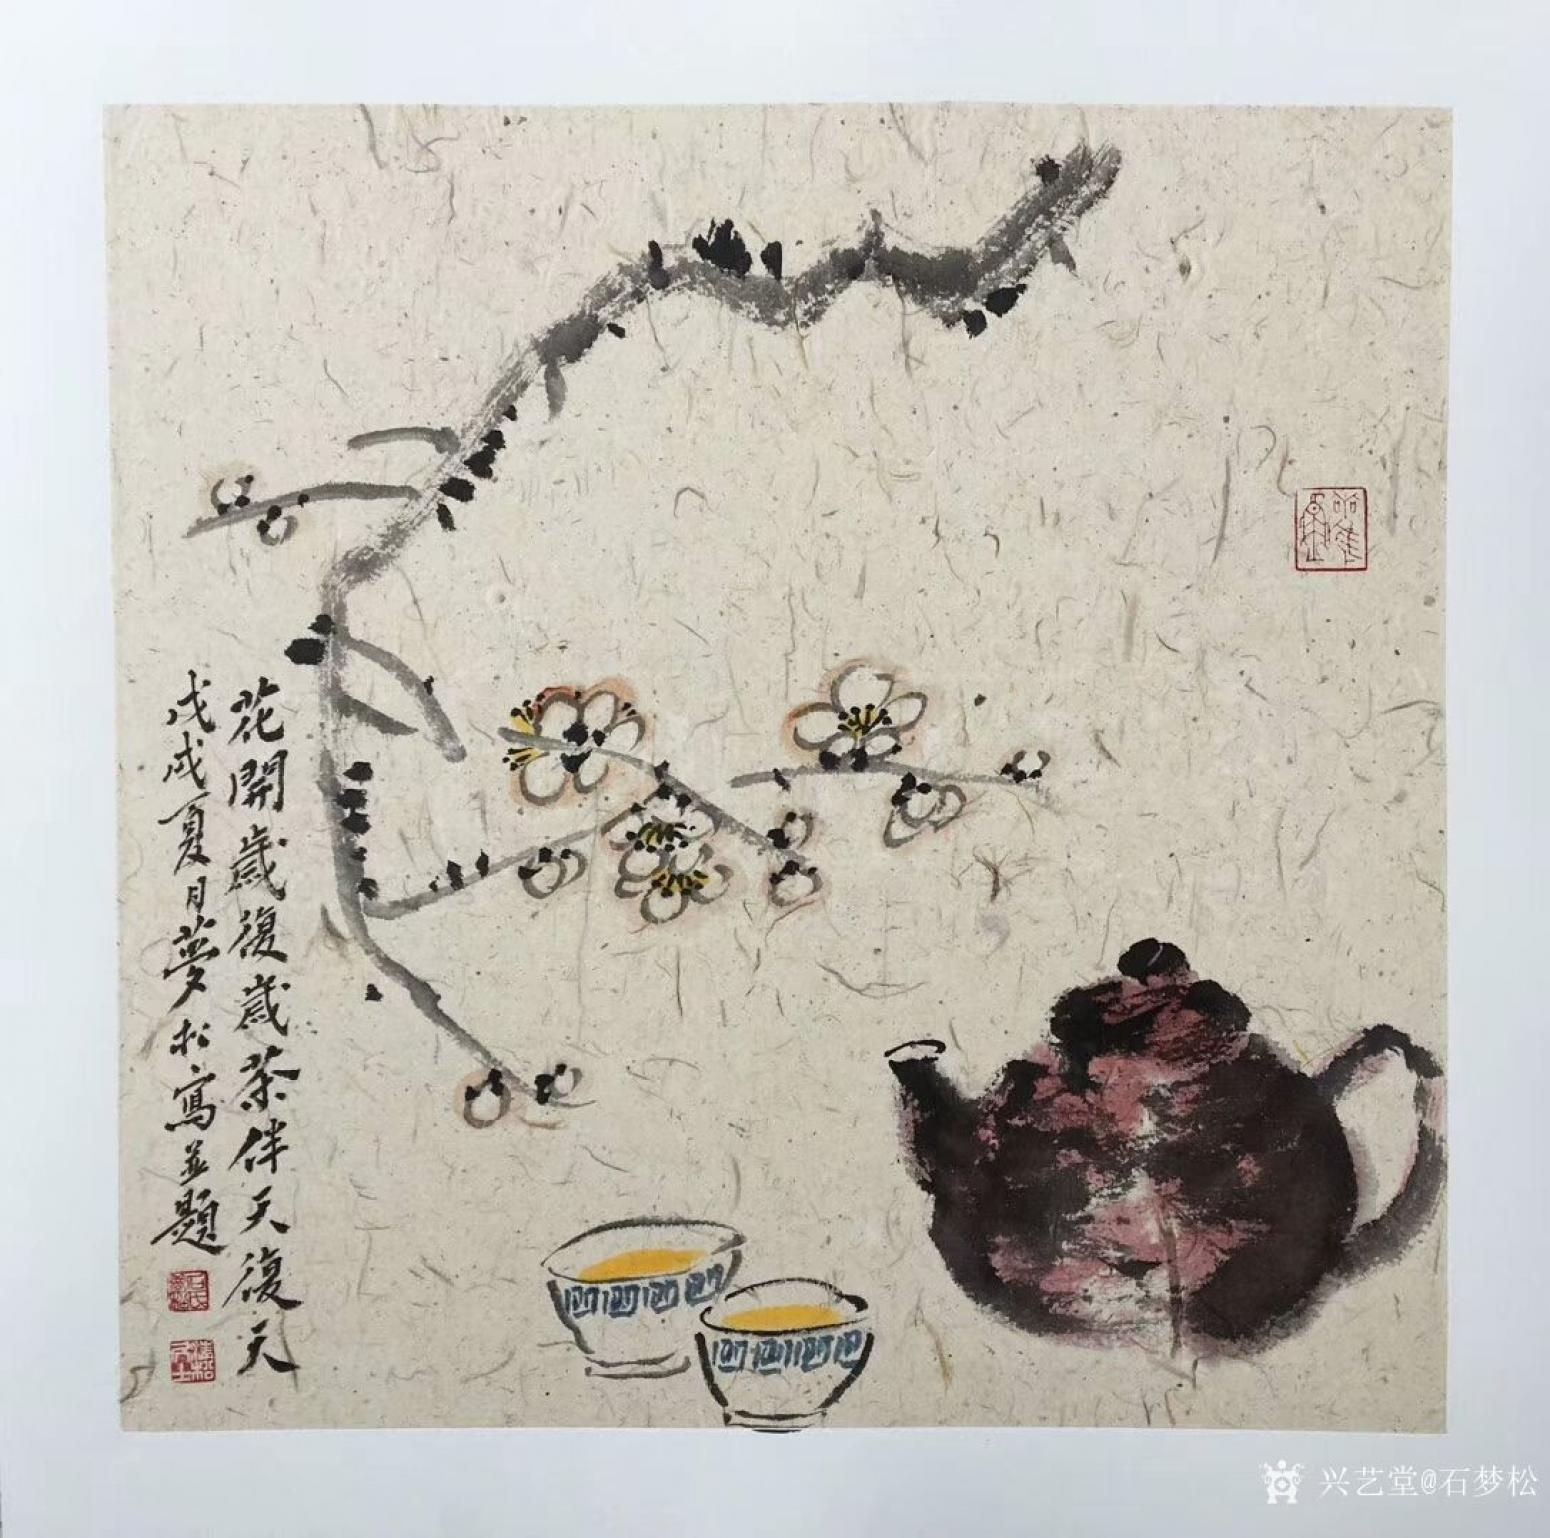 石梦松国画作品《一壶茶》